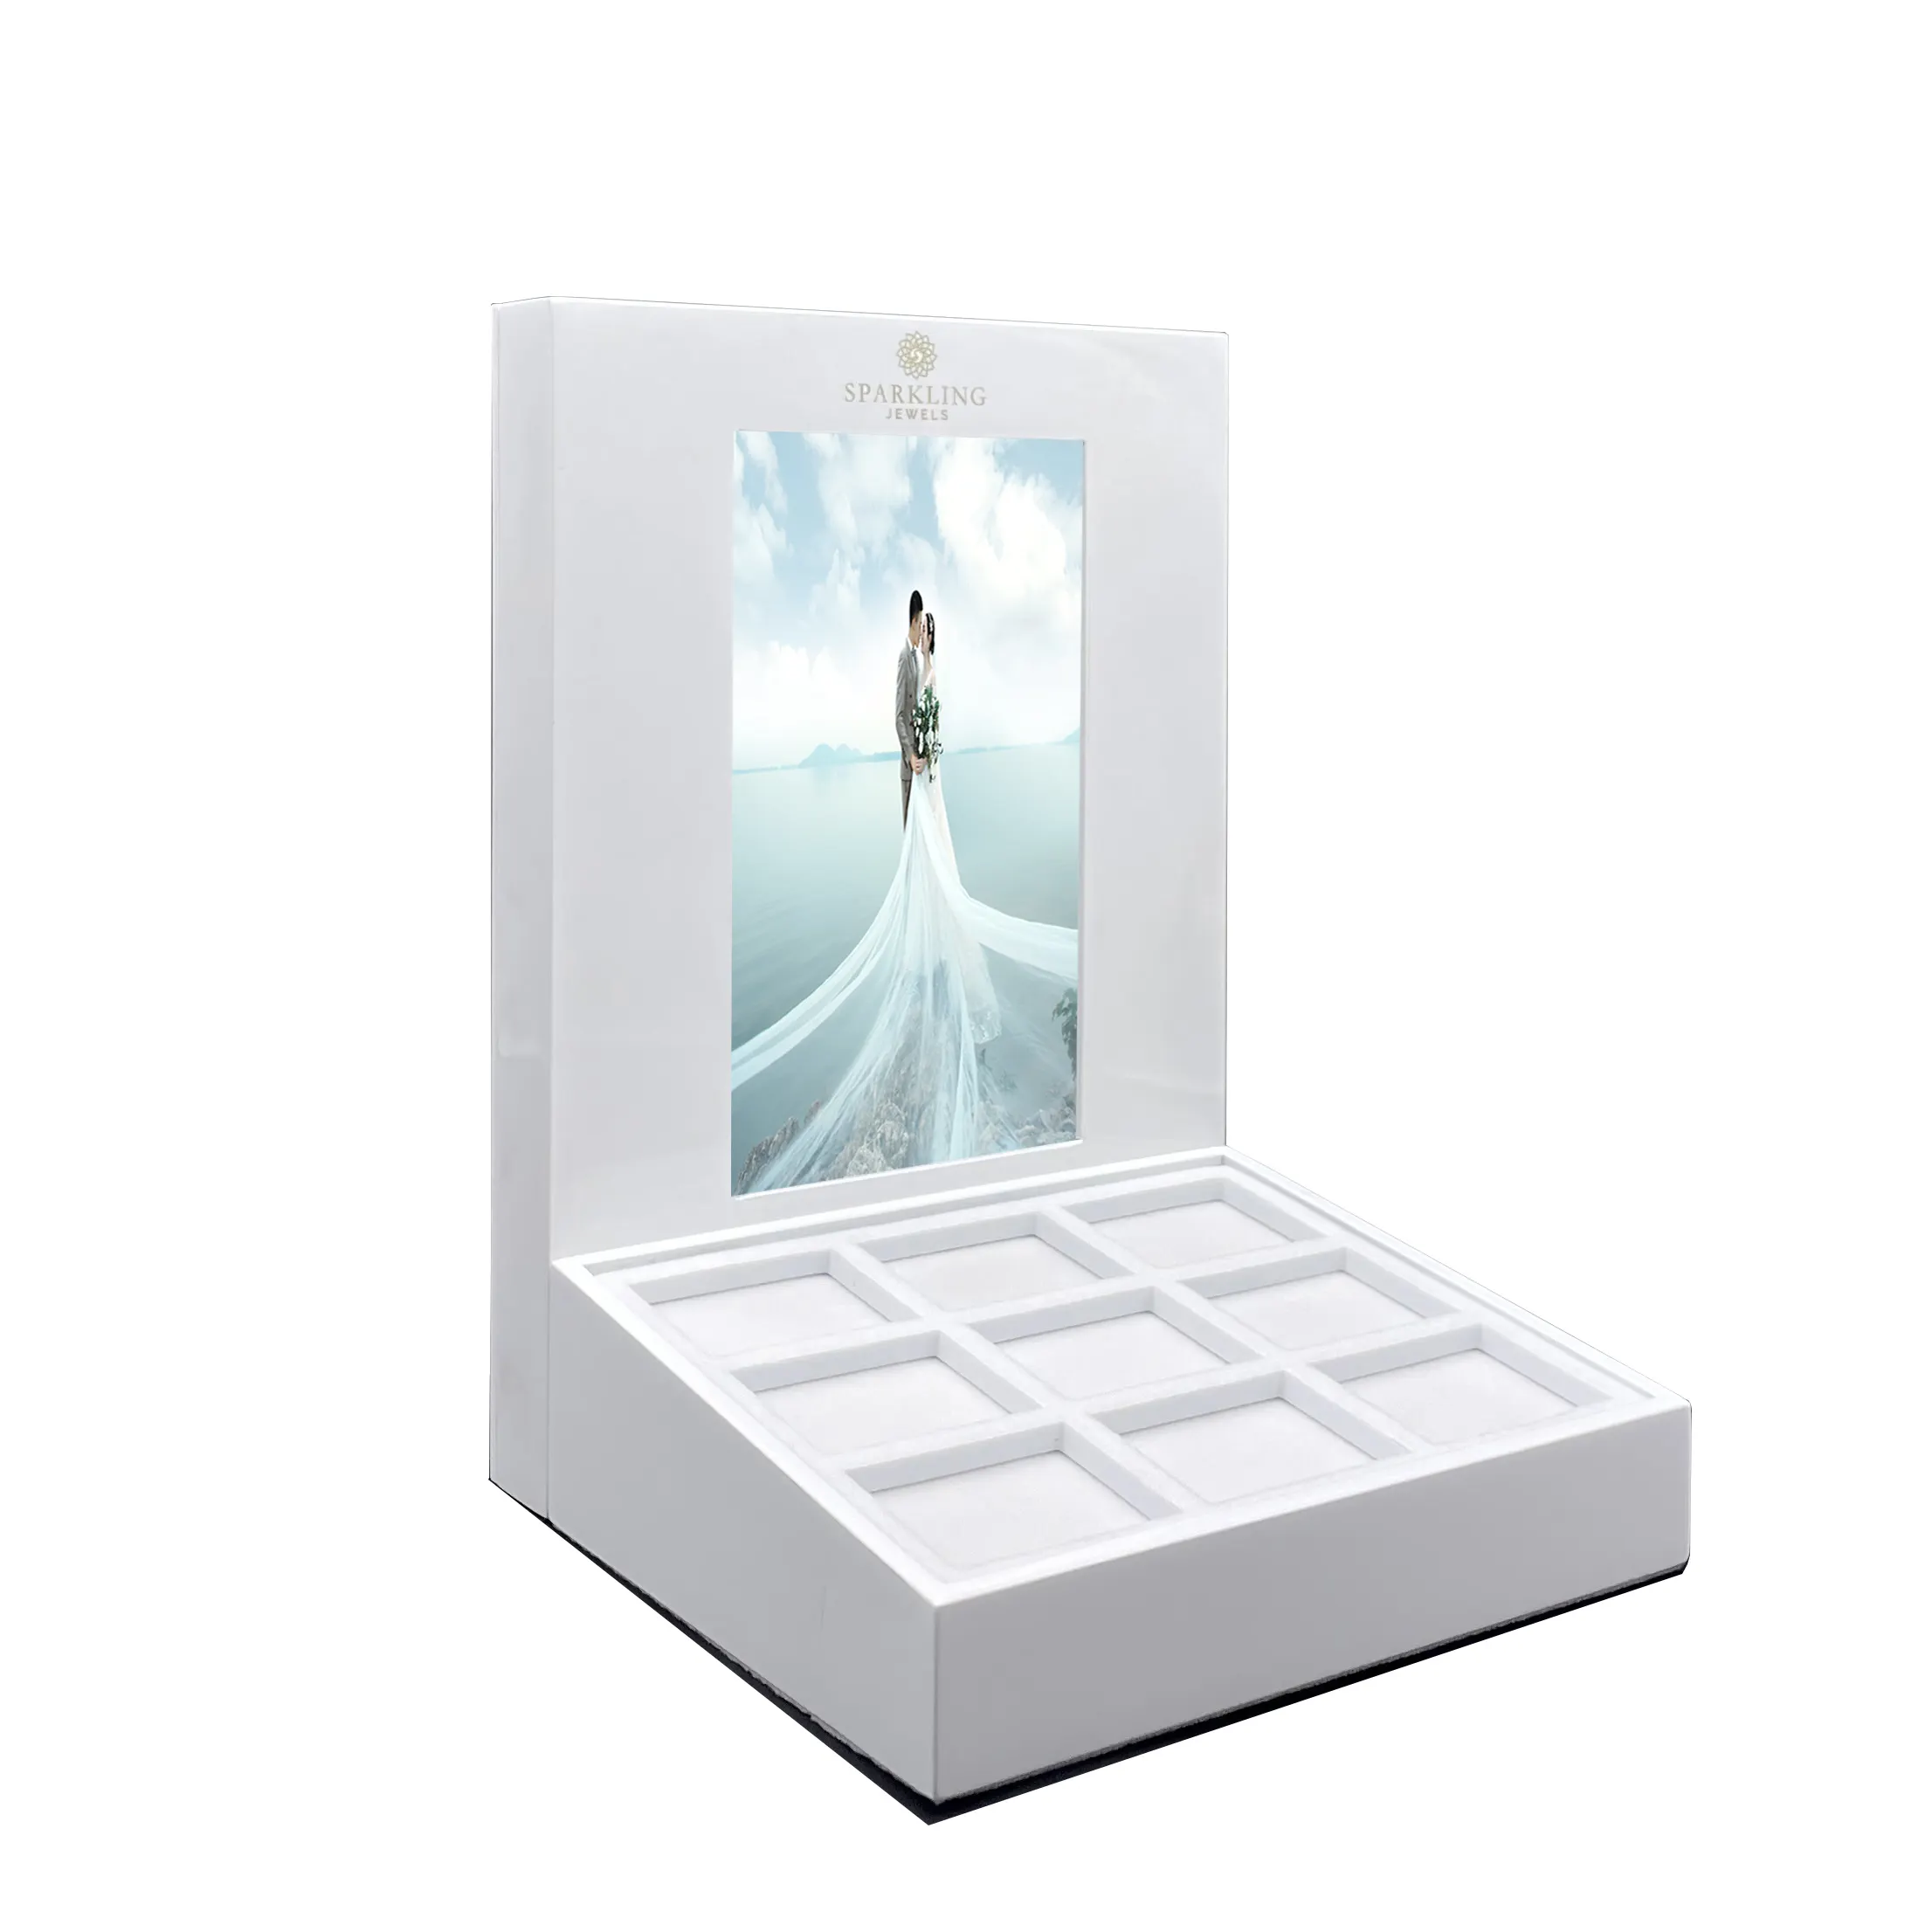 शेन्ज़ेन फैक्टरी प्रदर्शनी उत्पाद प्रदर्शन खड़े गत्ता वीडियो एक्रिलिक प्रदर्शन एलसीडी स्क्रीन के साथ खड़ा है